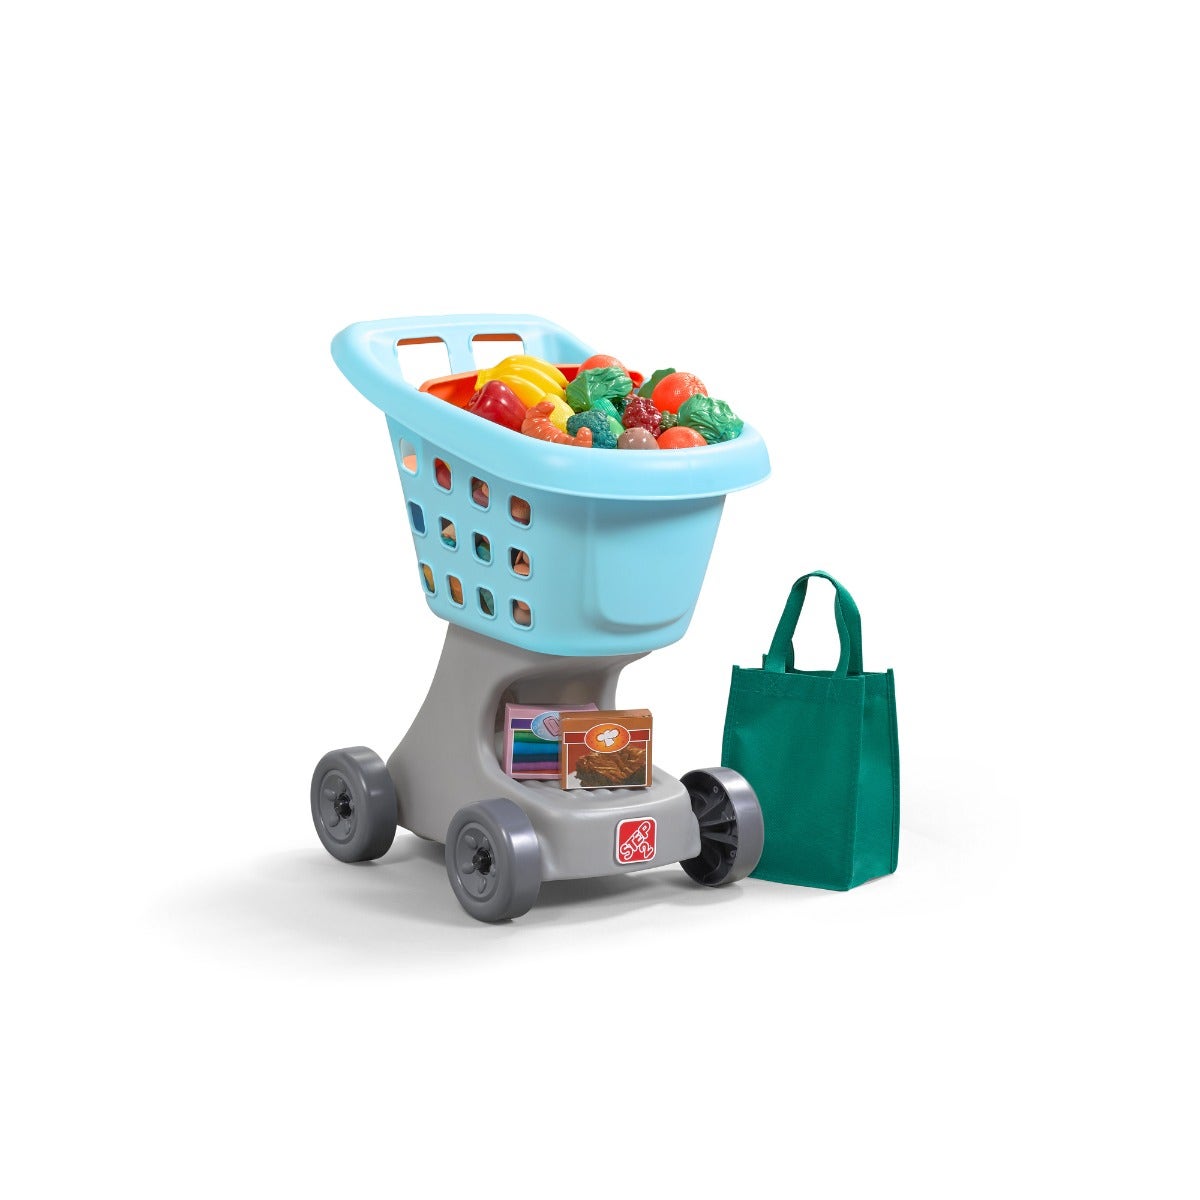 Little Helper's Cart & Shopping Set™ - Light Blue Parts from Step2